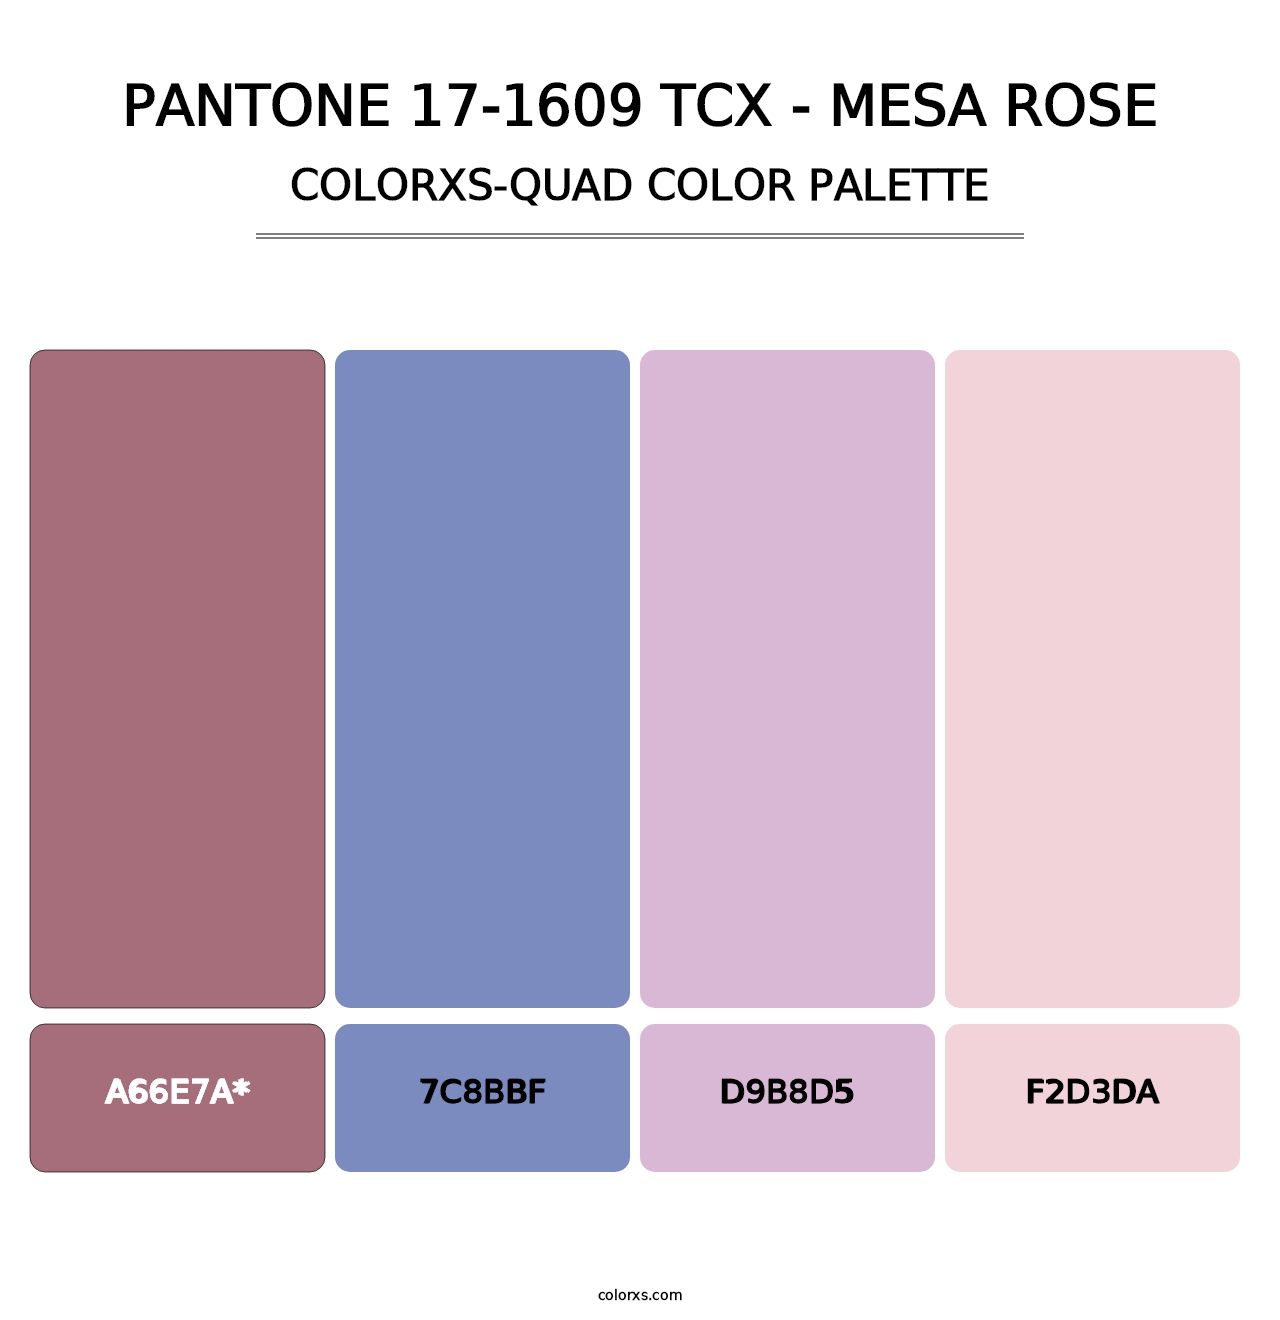 PANTONE 17-1609 TCX - Mesa Rose - Colorxs Quad Palette